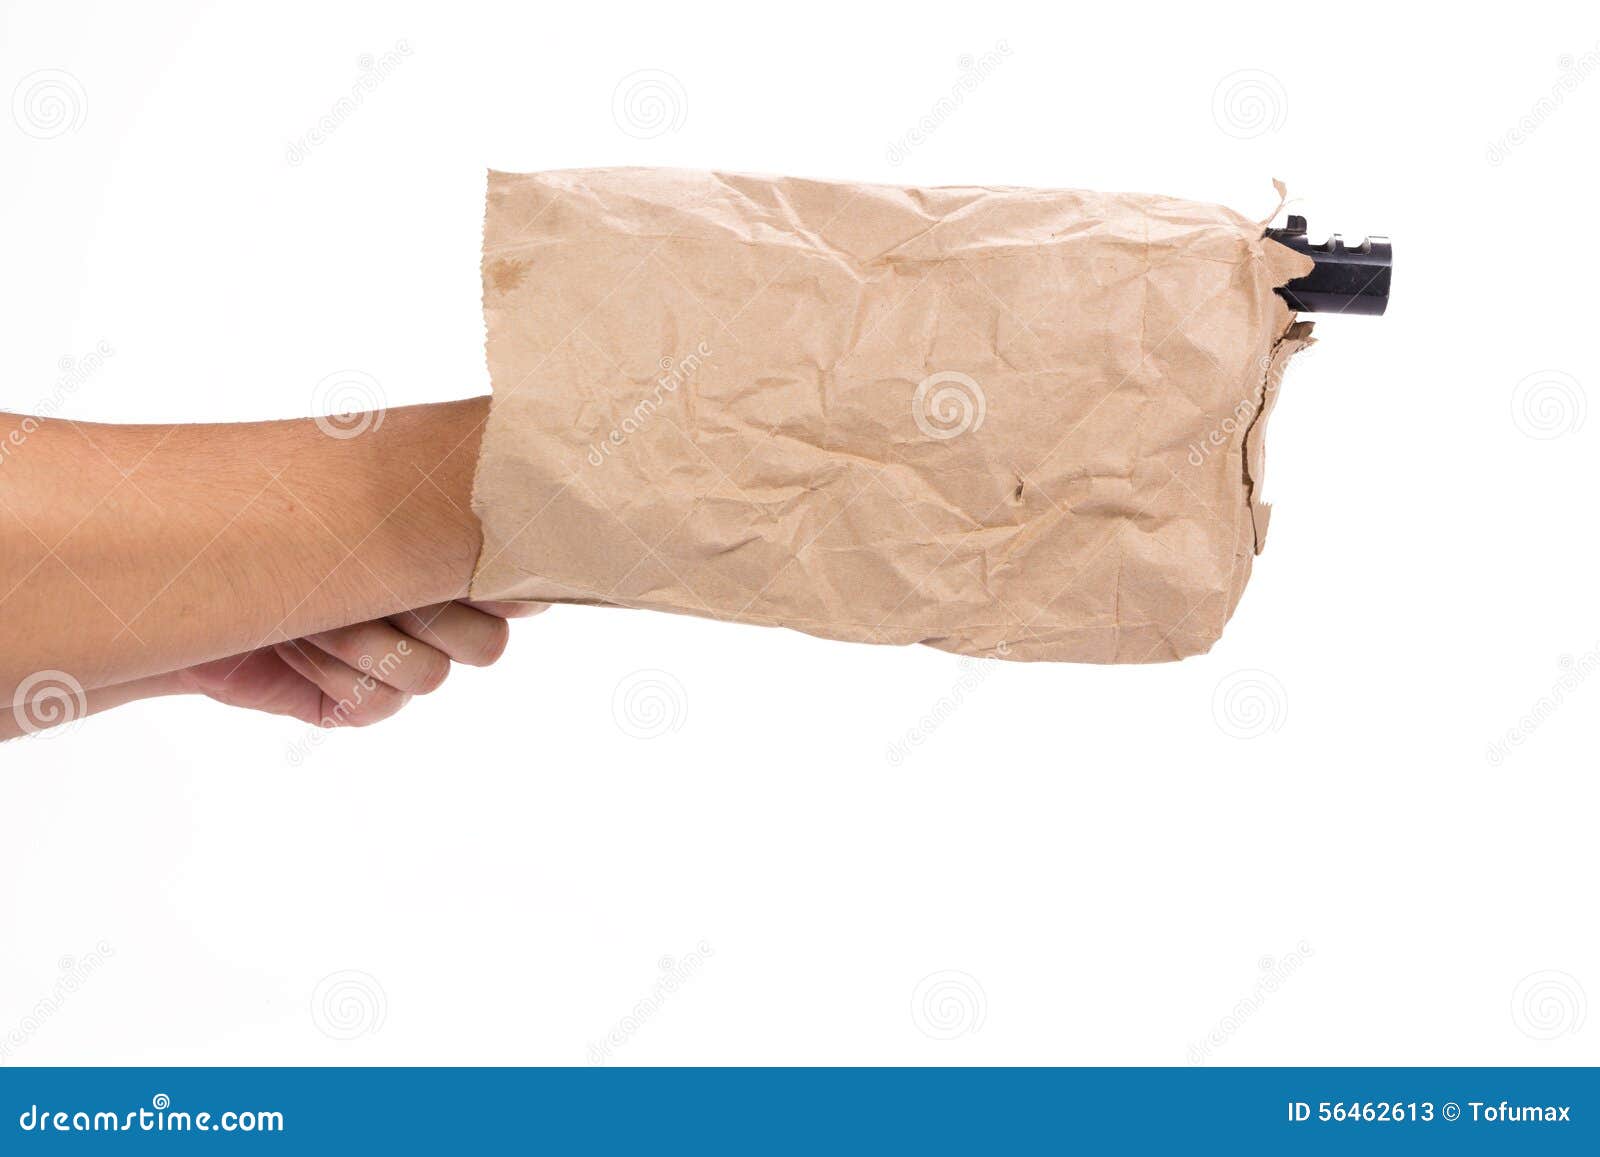 gun-paper-bag-hand-holding-white-background-56462613.jpg